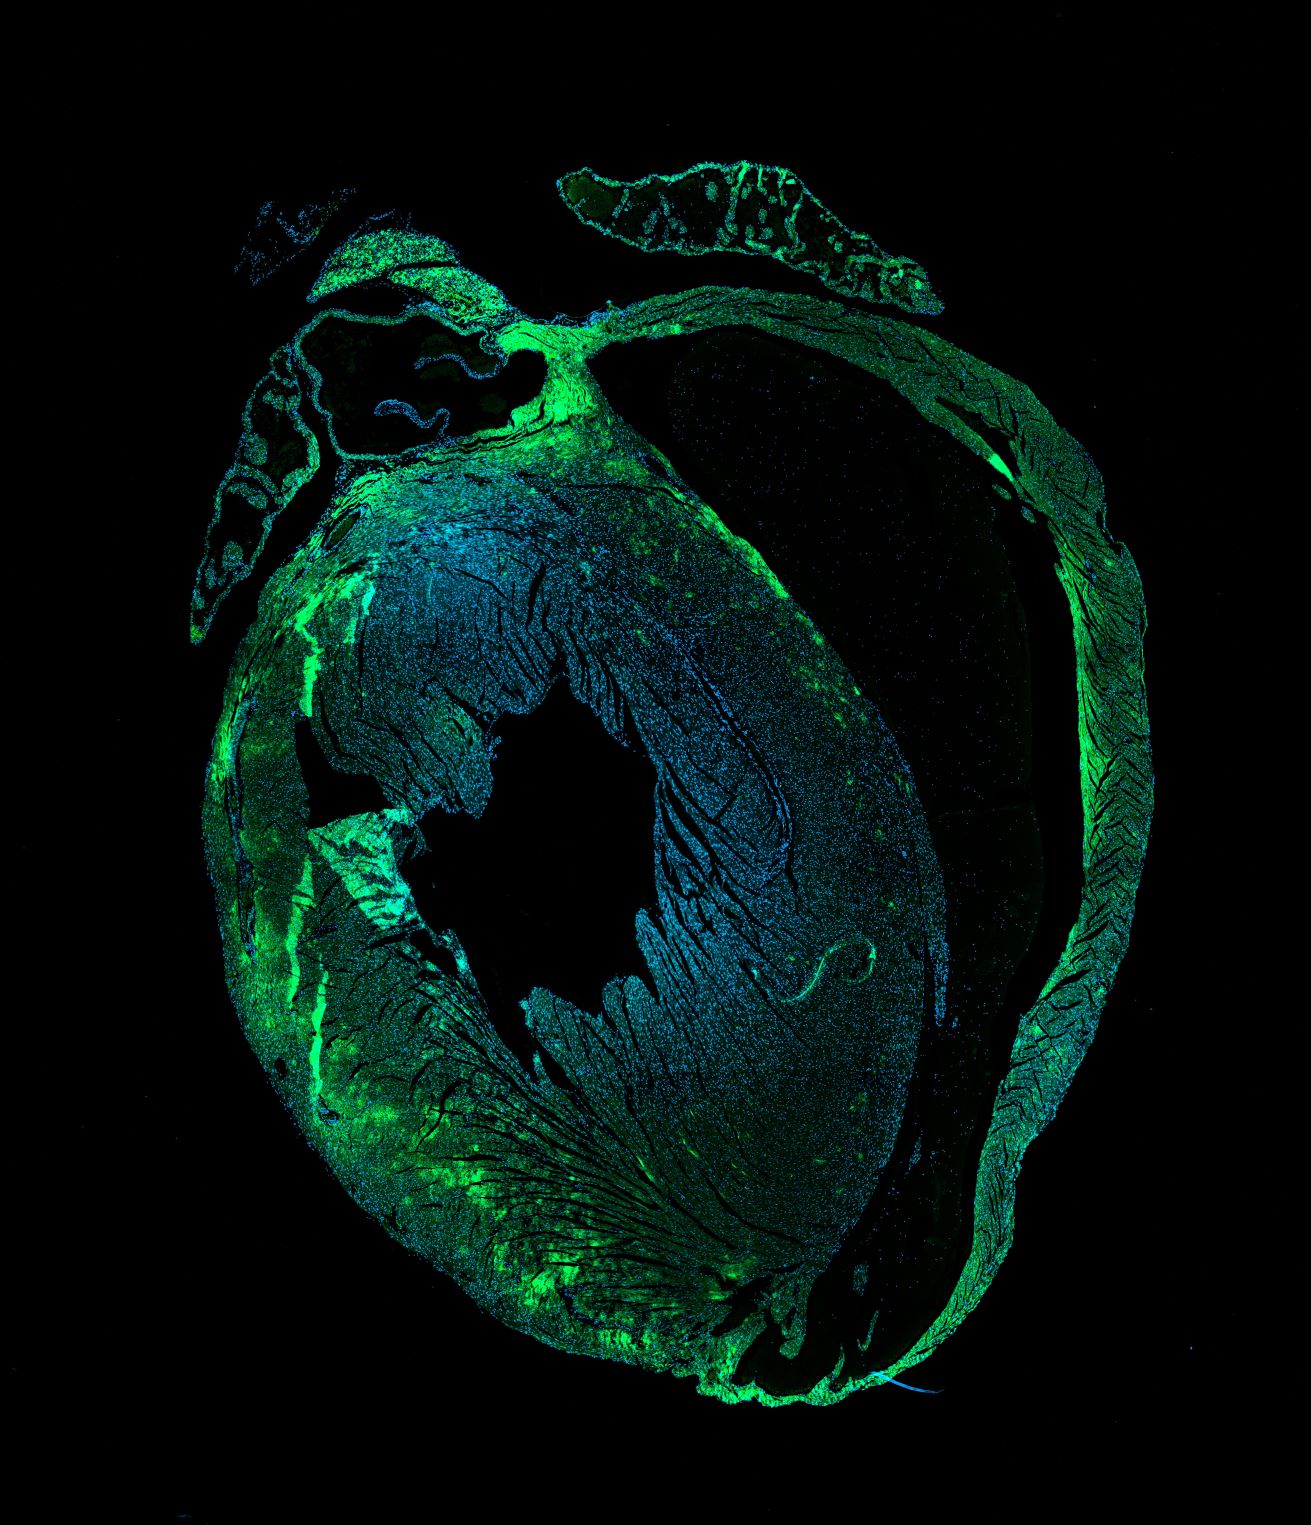 sezione di cuore con cellule marcate in fluorescenza-ft credits @CEINGE -immagine soggetta a copyright